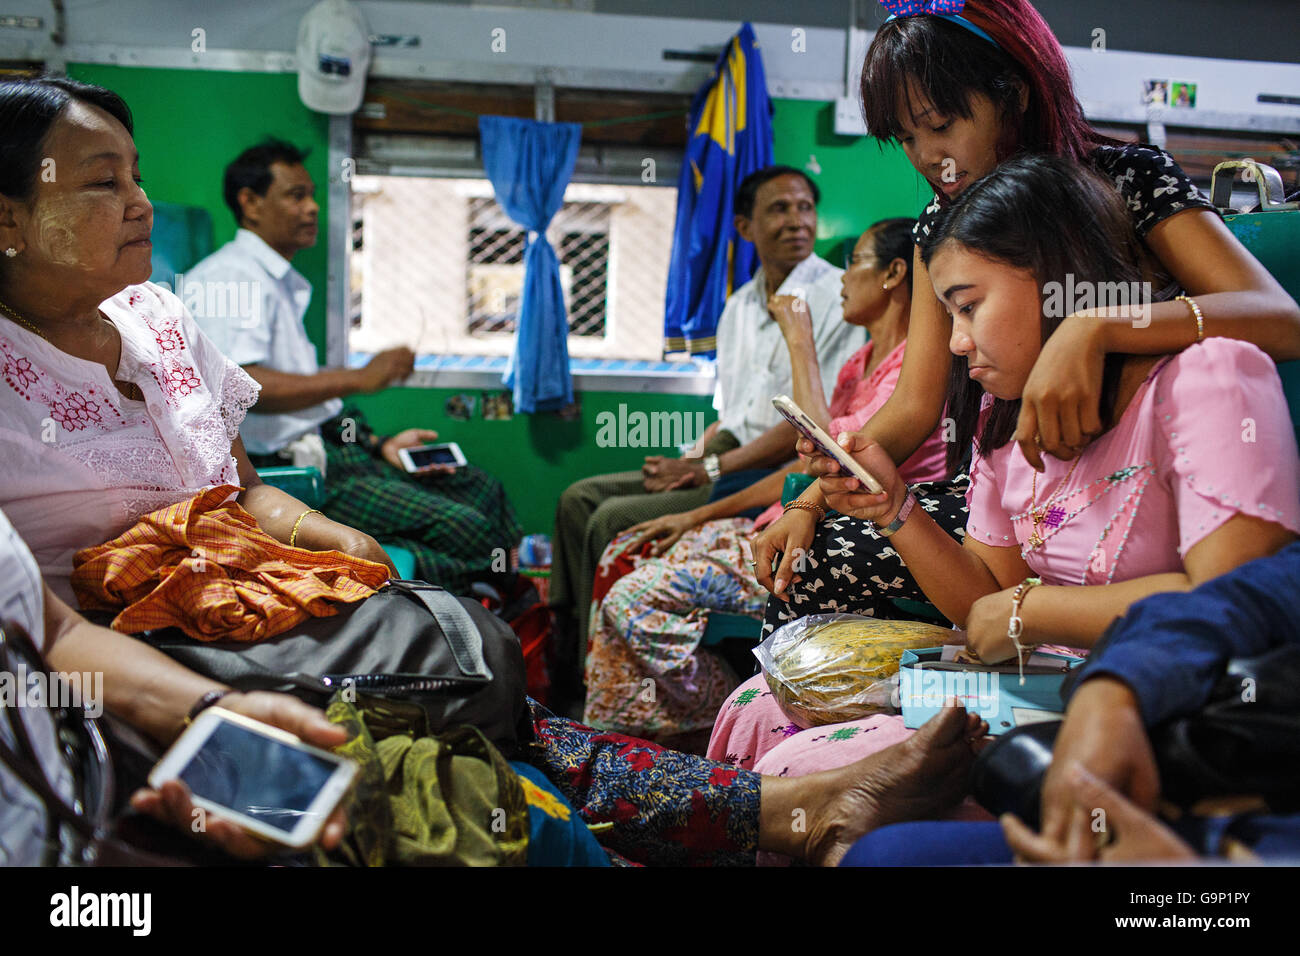 Los pasajeros de un tren en la estación de ferrocarril de Mandalay, Myanmar. Foto de stock